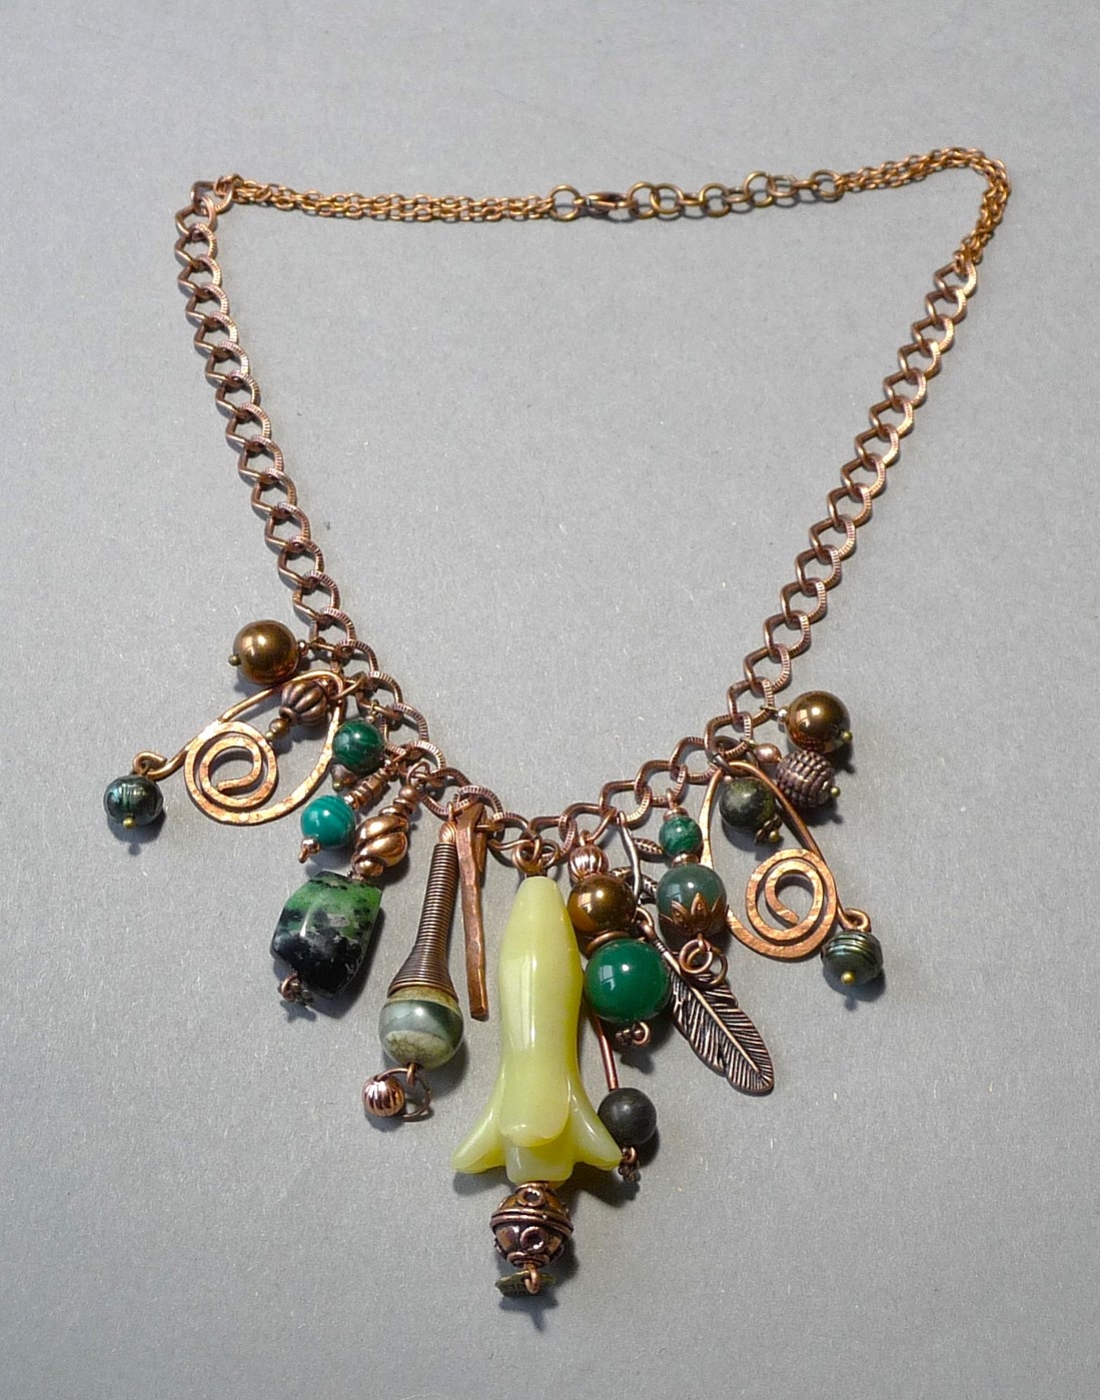 elegancka kompozycja naszyjnika w bardzo modnym stylu Boho z oliwinem i innymi minerałami